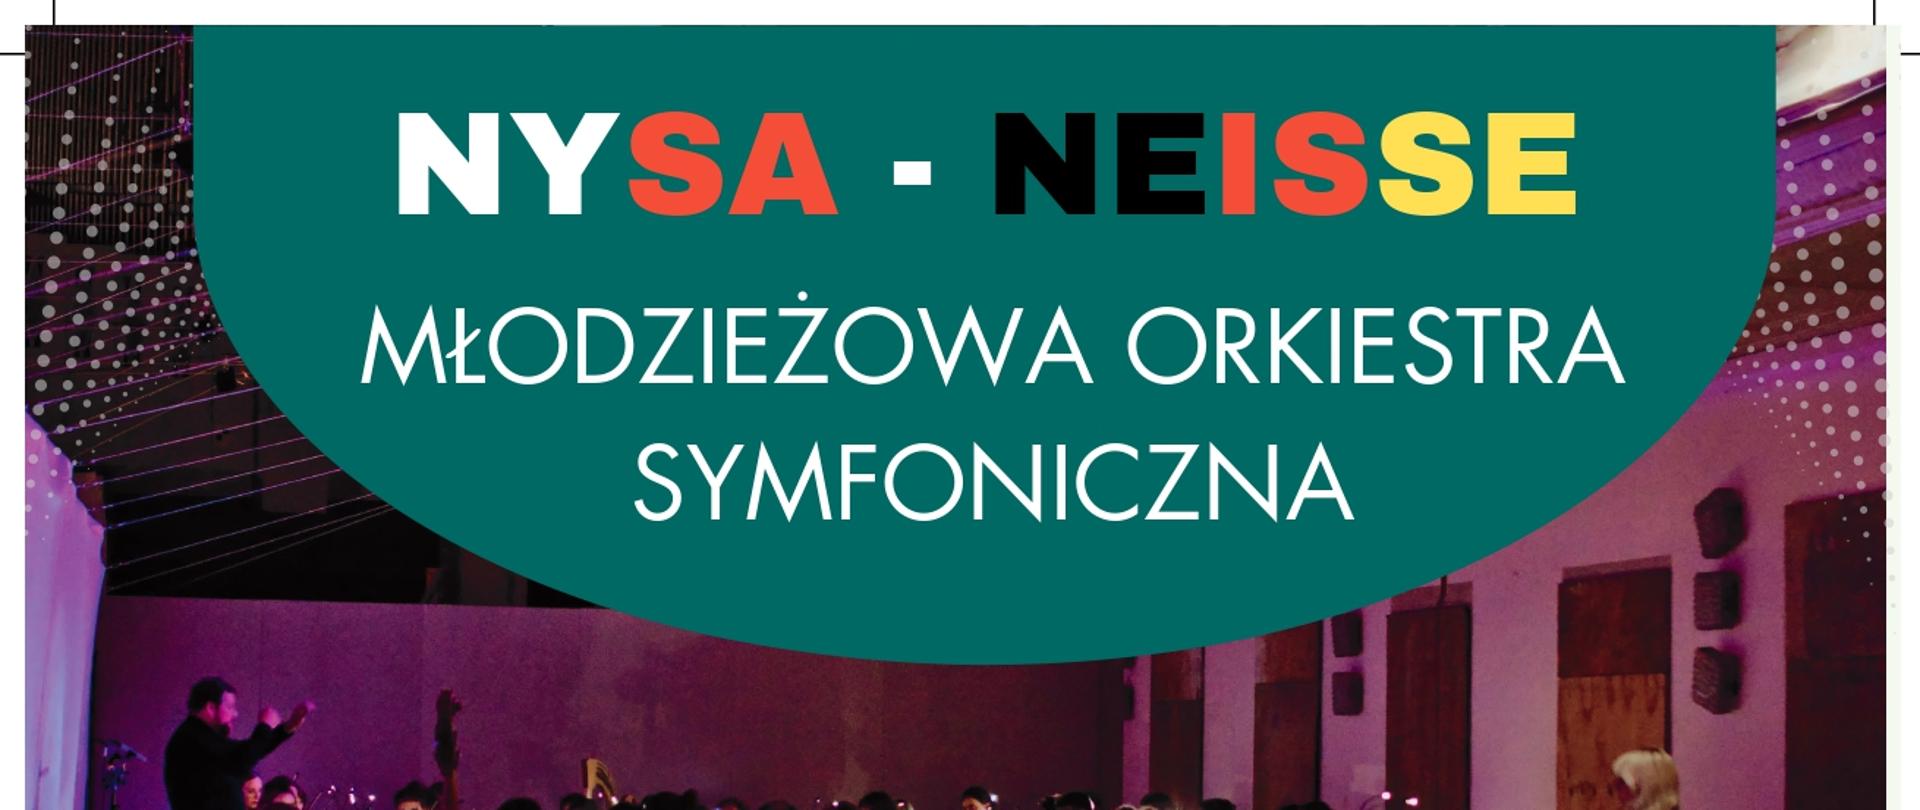 Plakat informujący o koncertach symfonicznych Młodzieżowej Orkiestry Nysa-Neisse